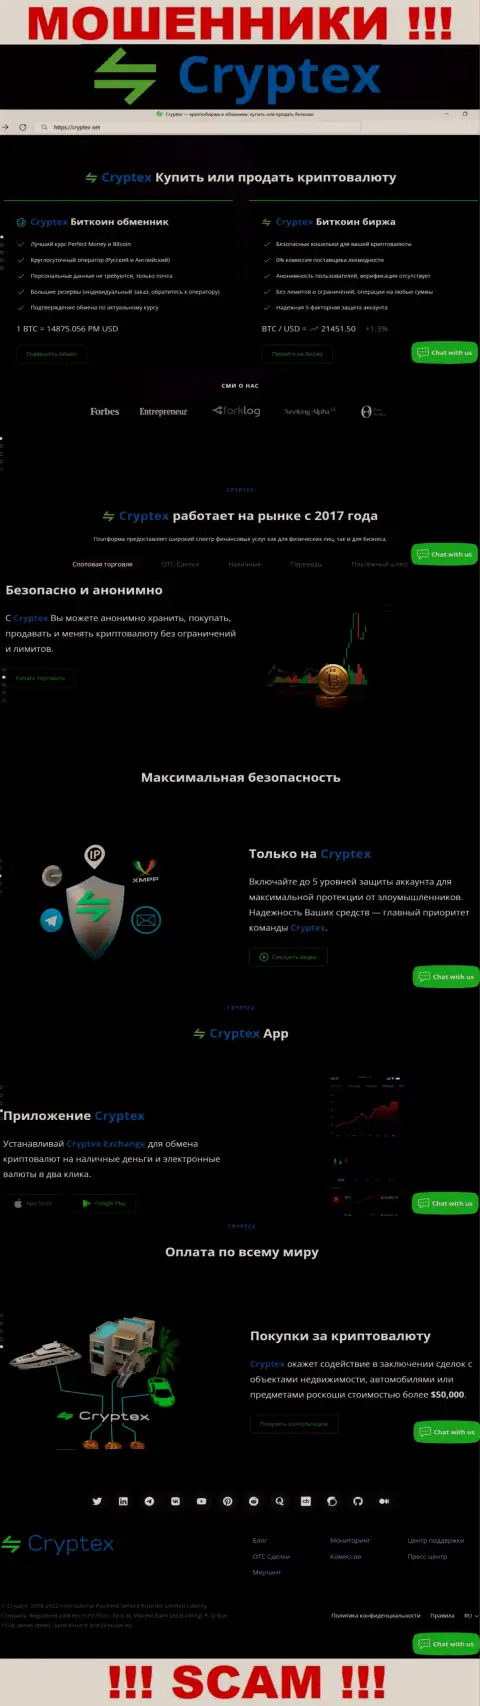 Скрин официального веб-портала противозаконно действующей конторы Криптекс Нет